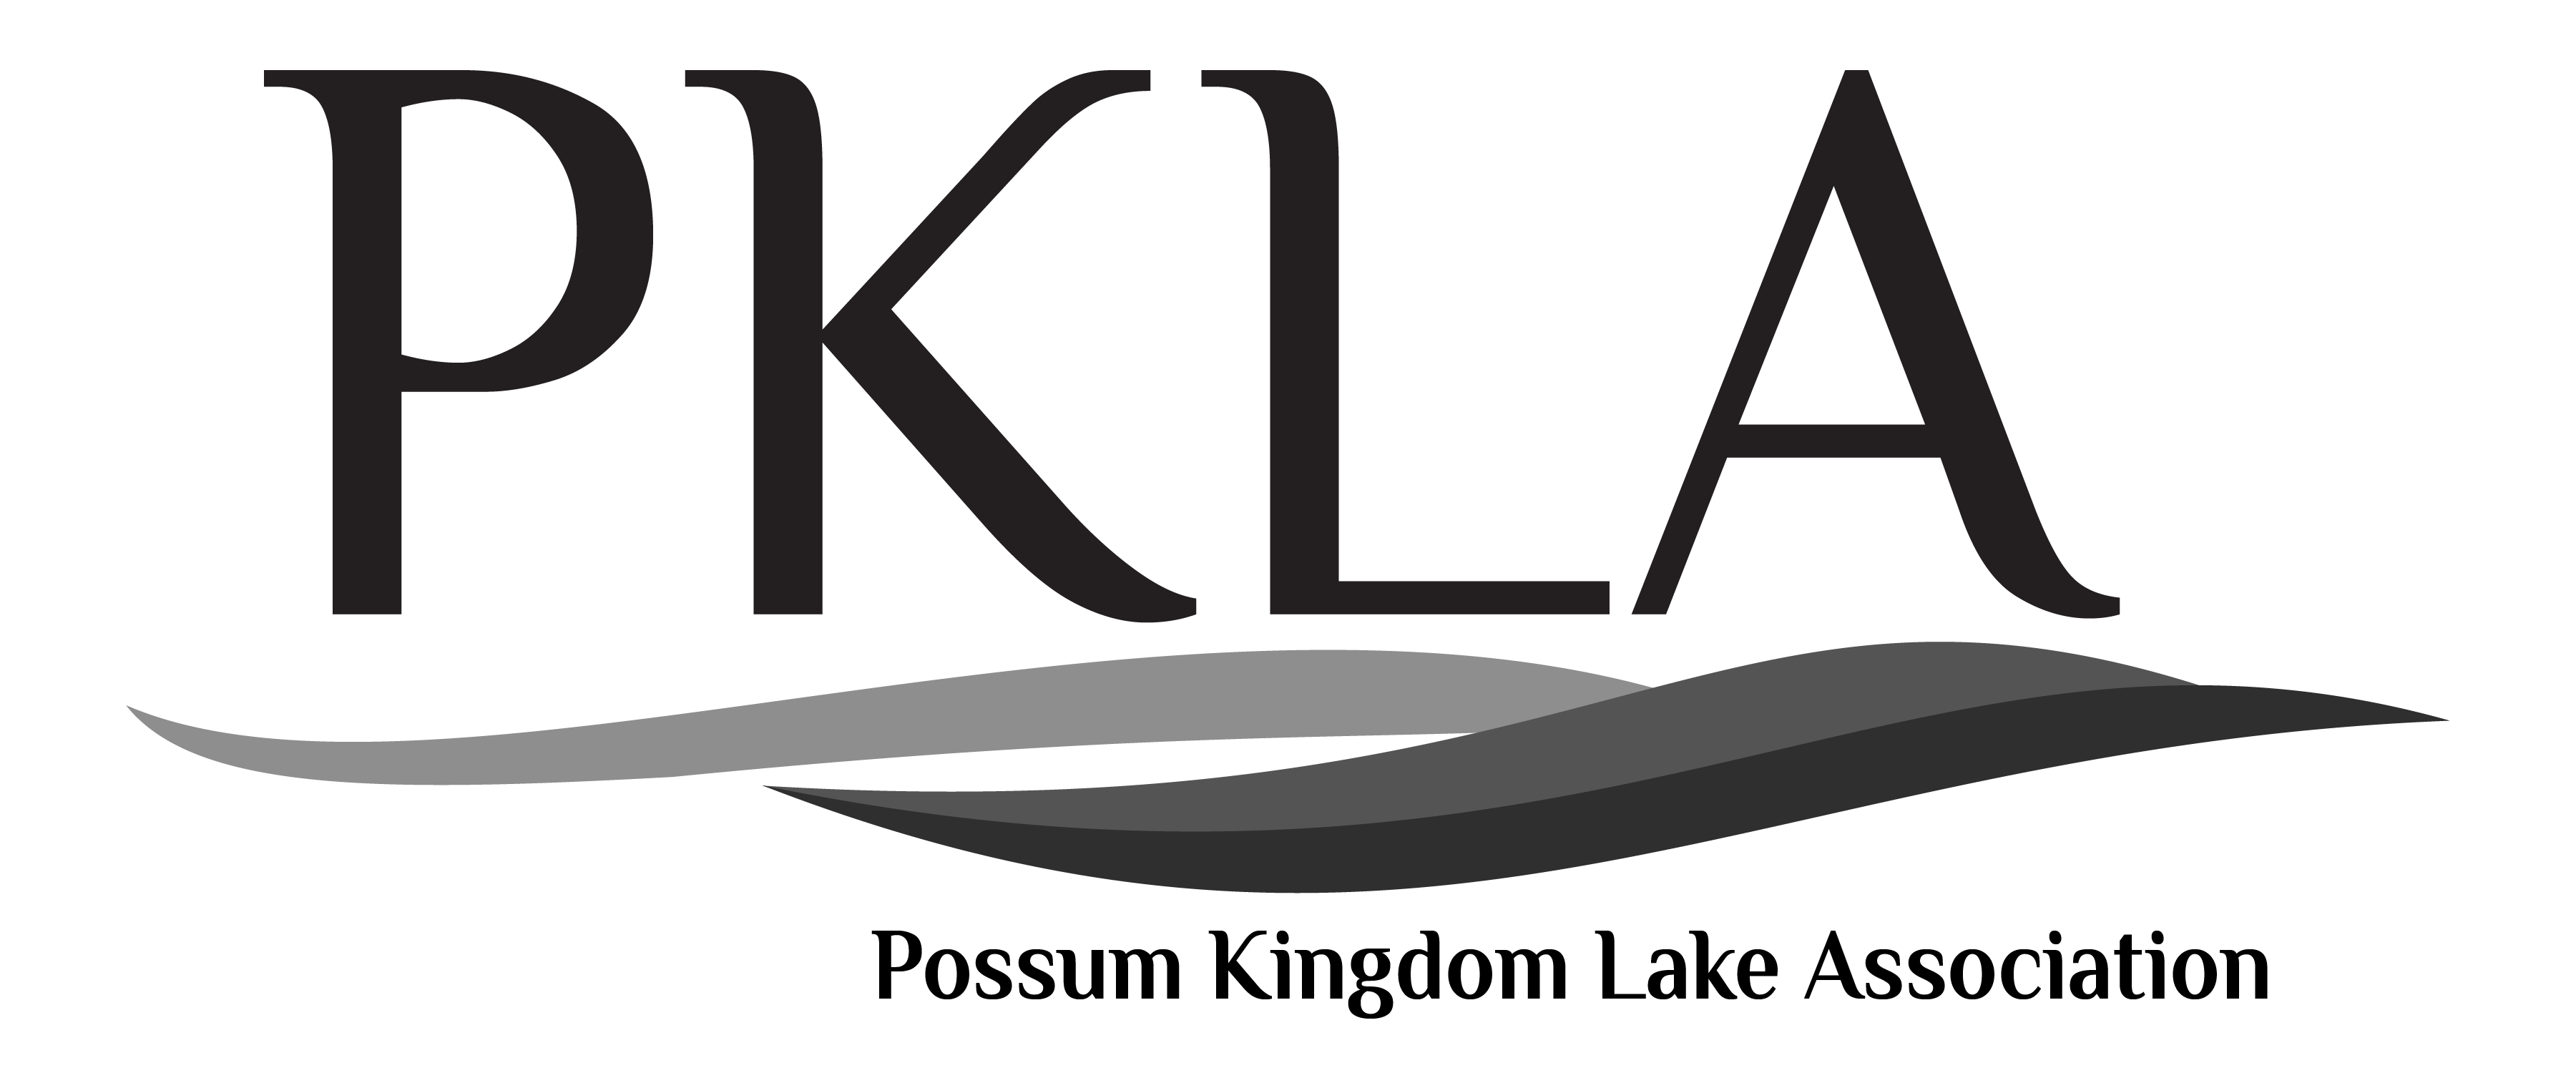 PKLA company logo